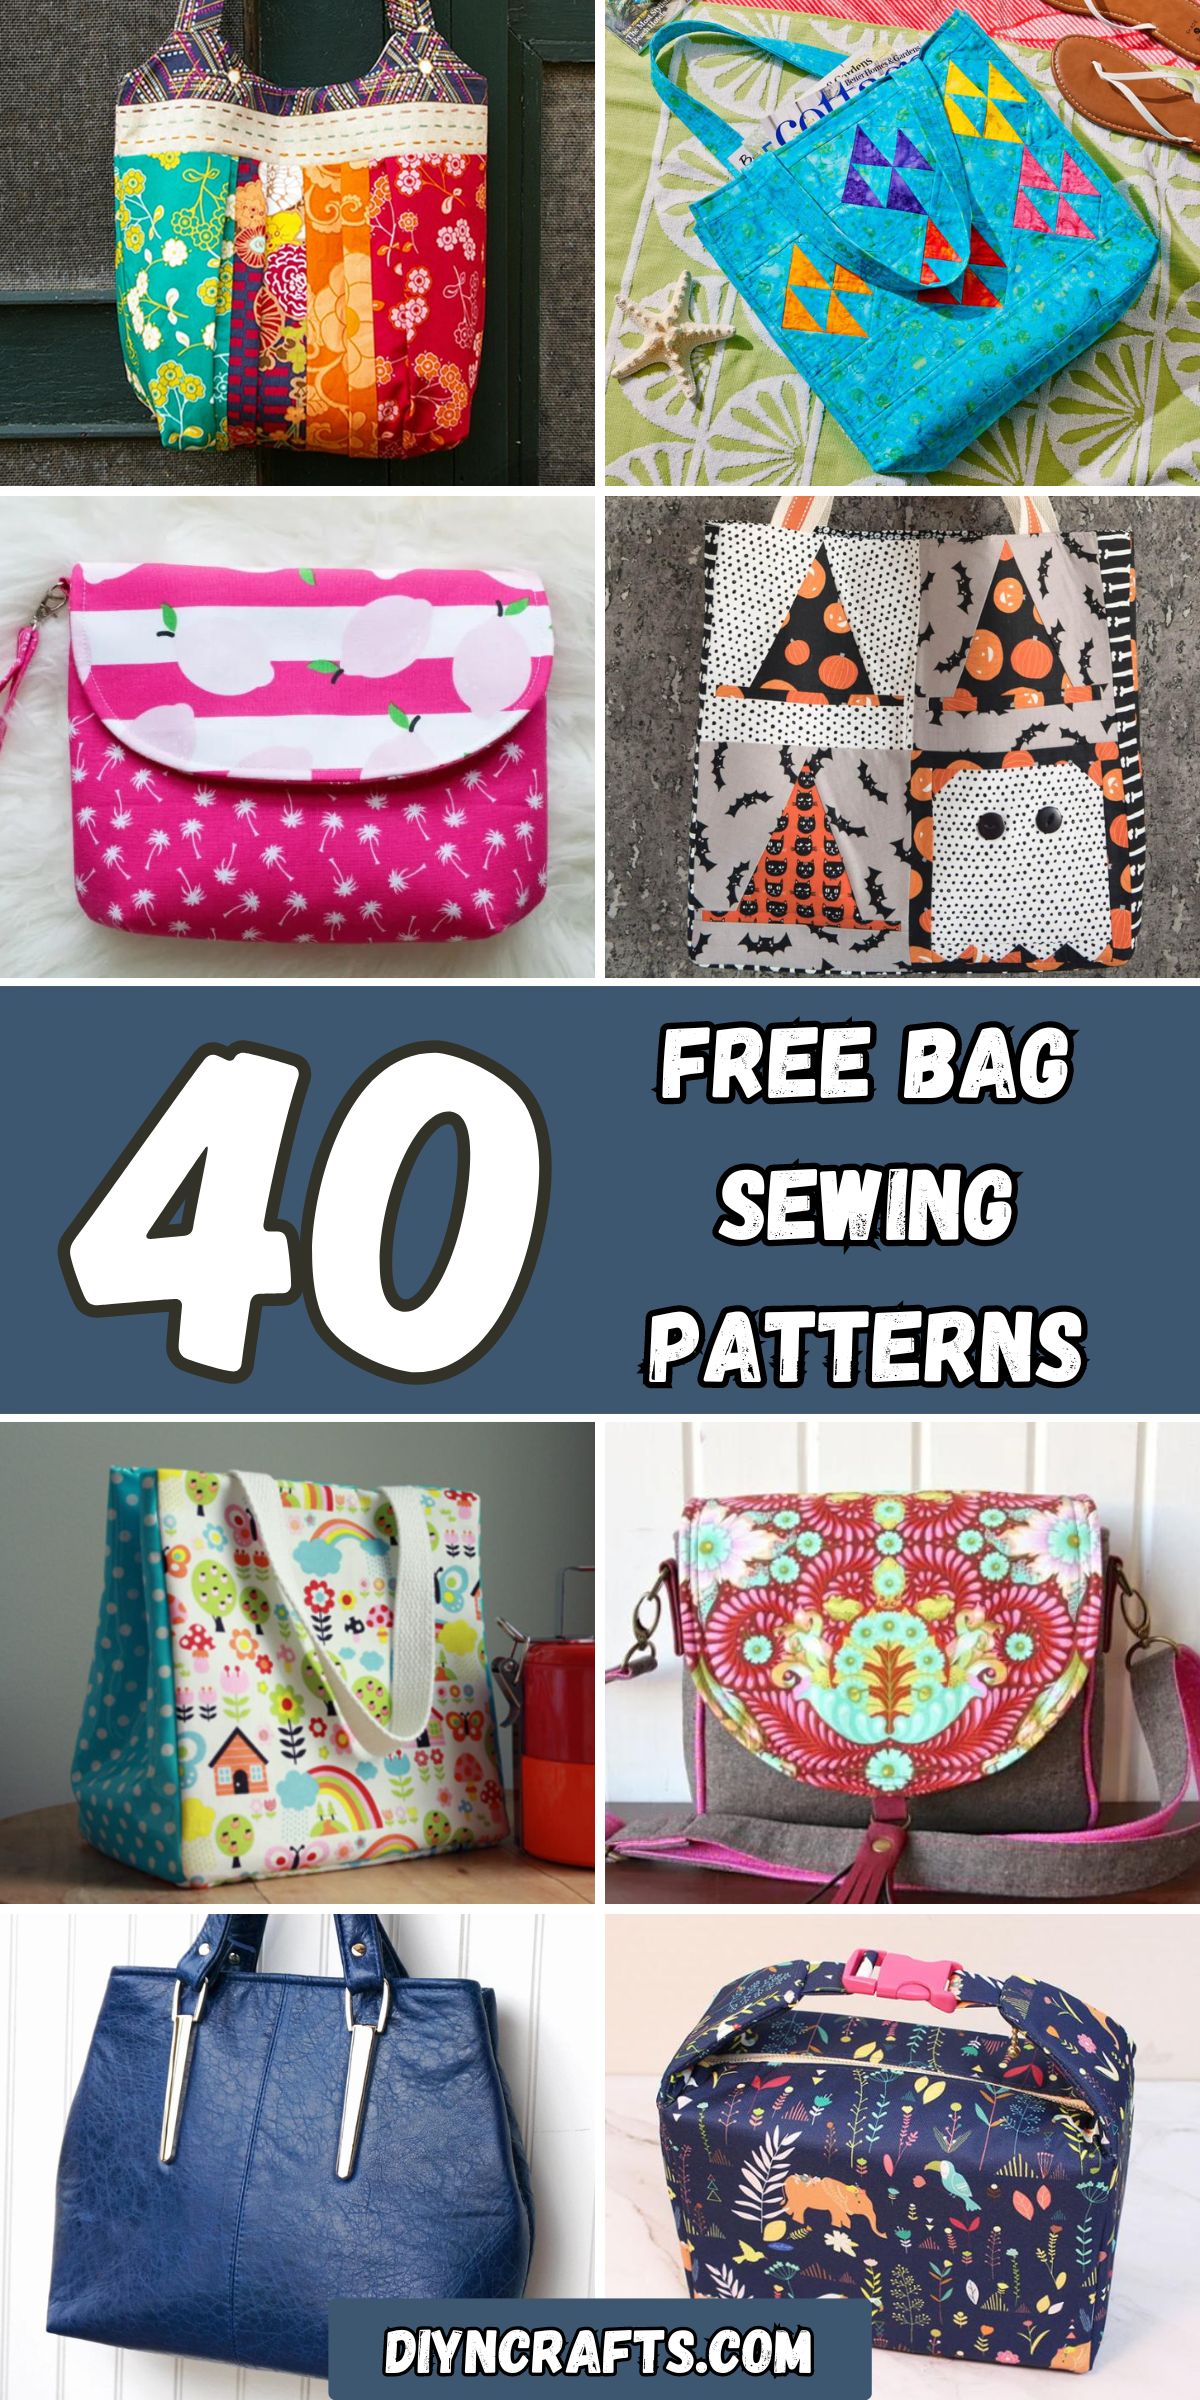 40 Free Bag Sewing Patterns collage.